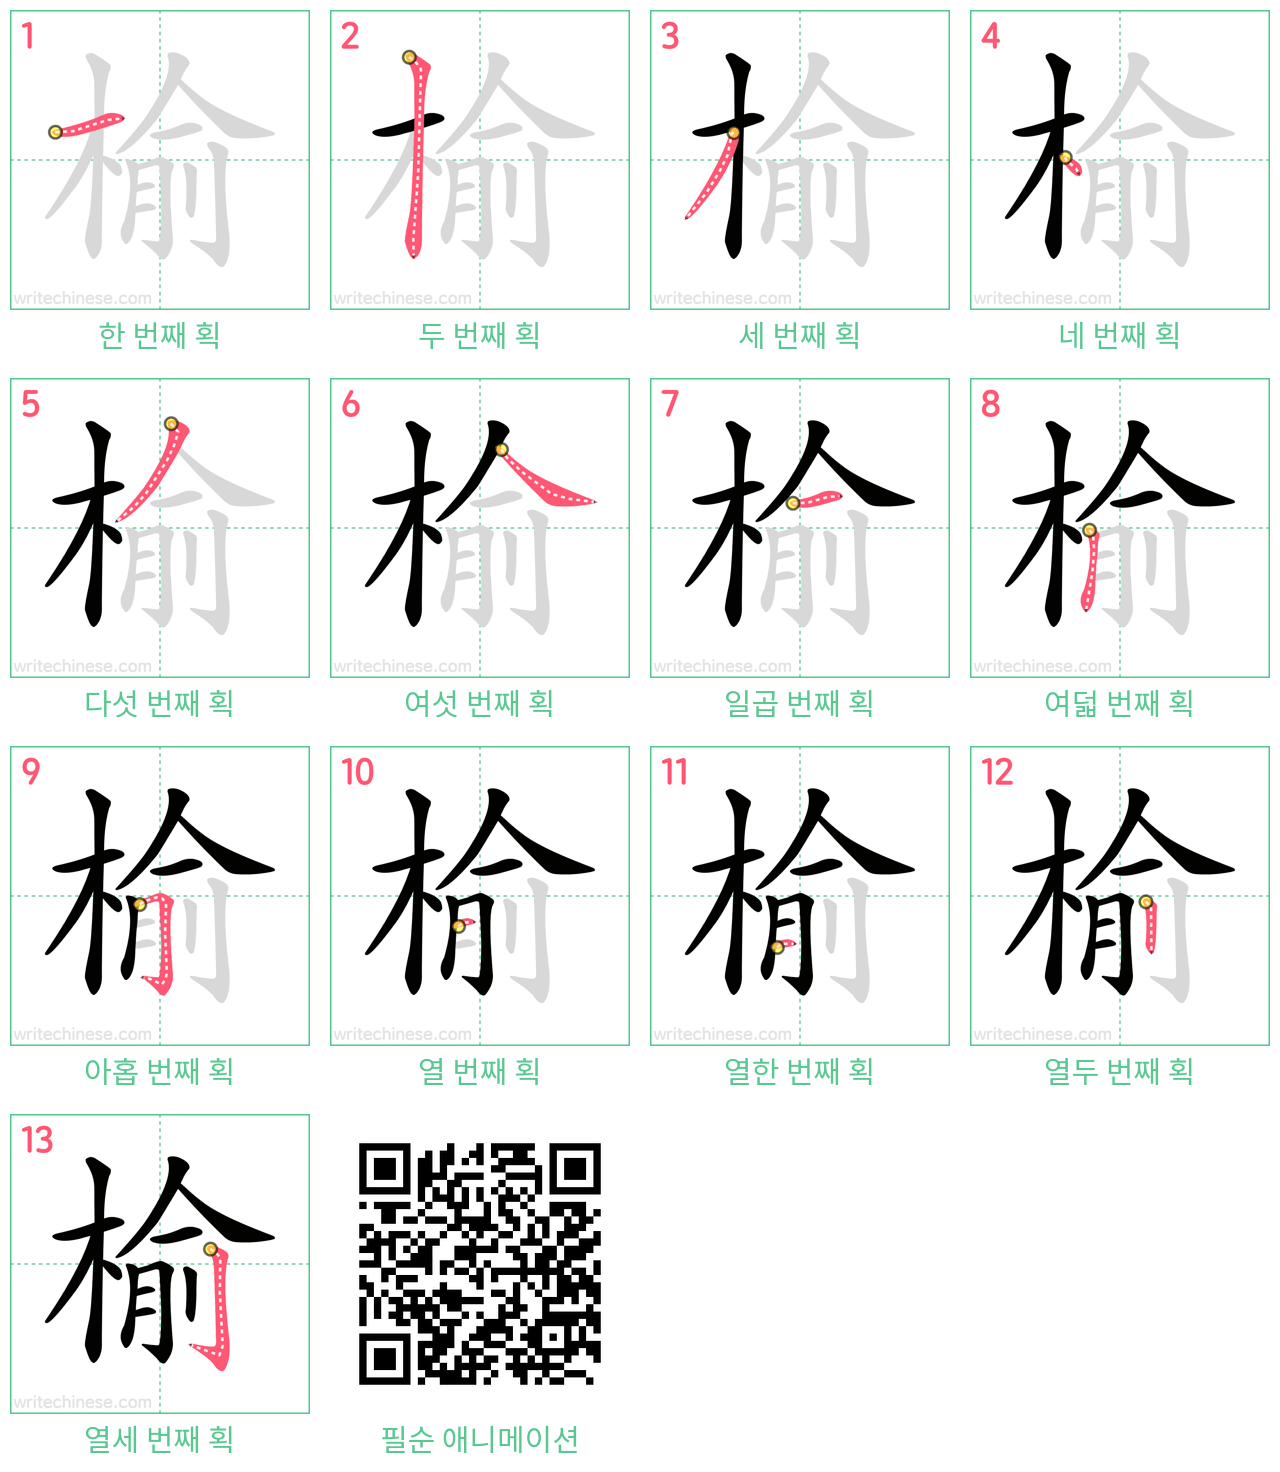 榆 step-by-step stroke order diagrams